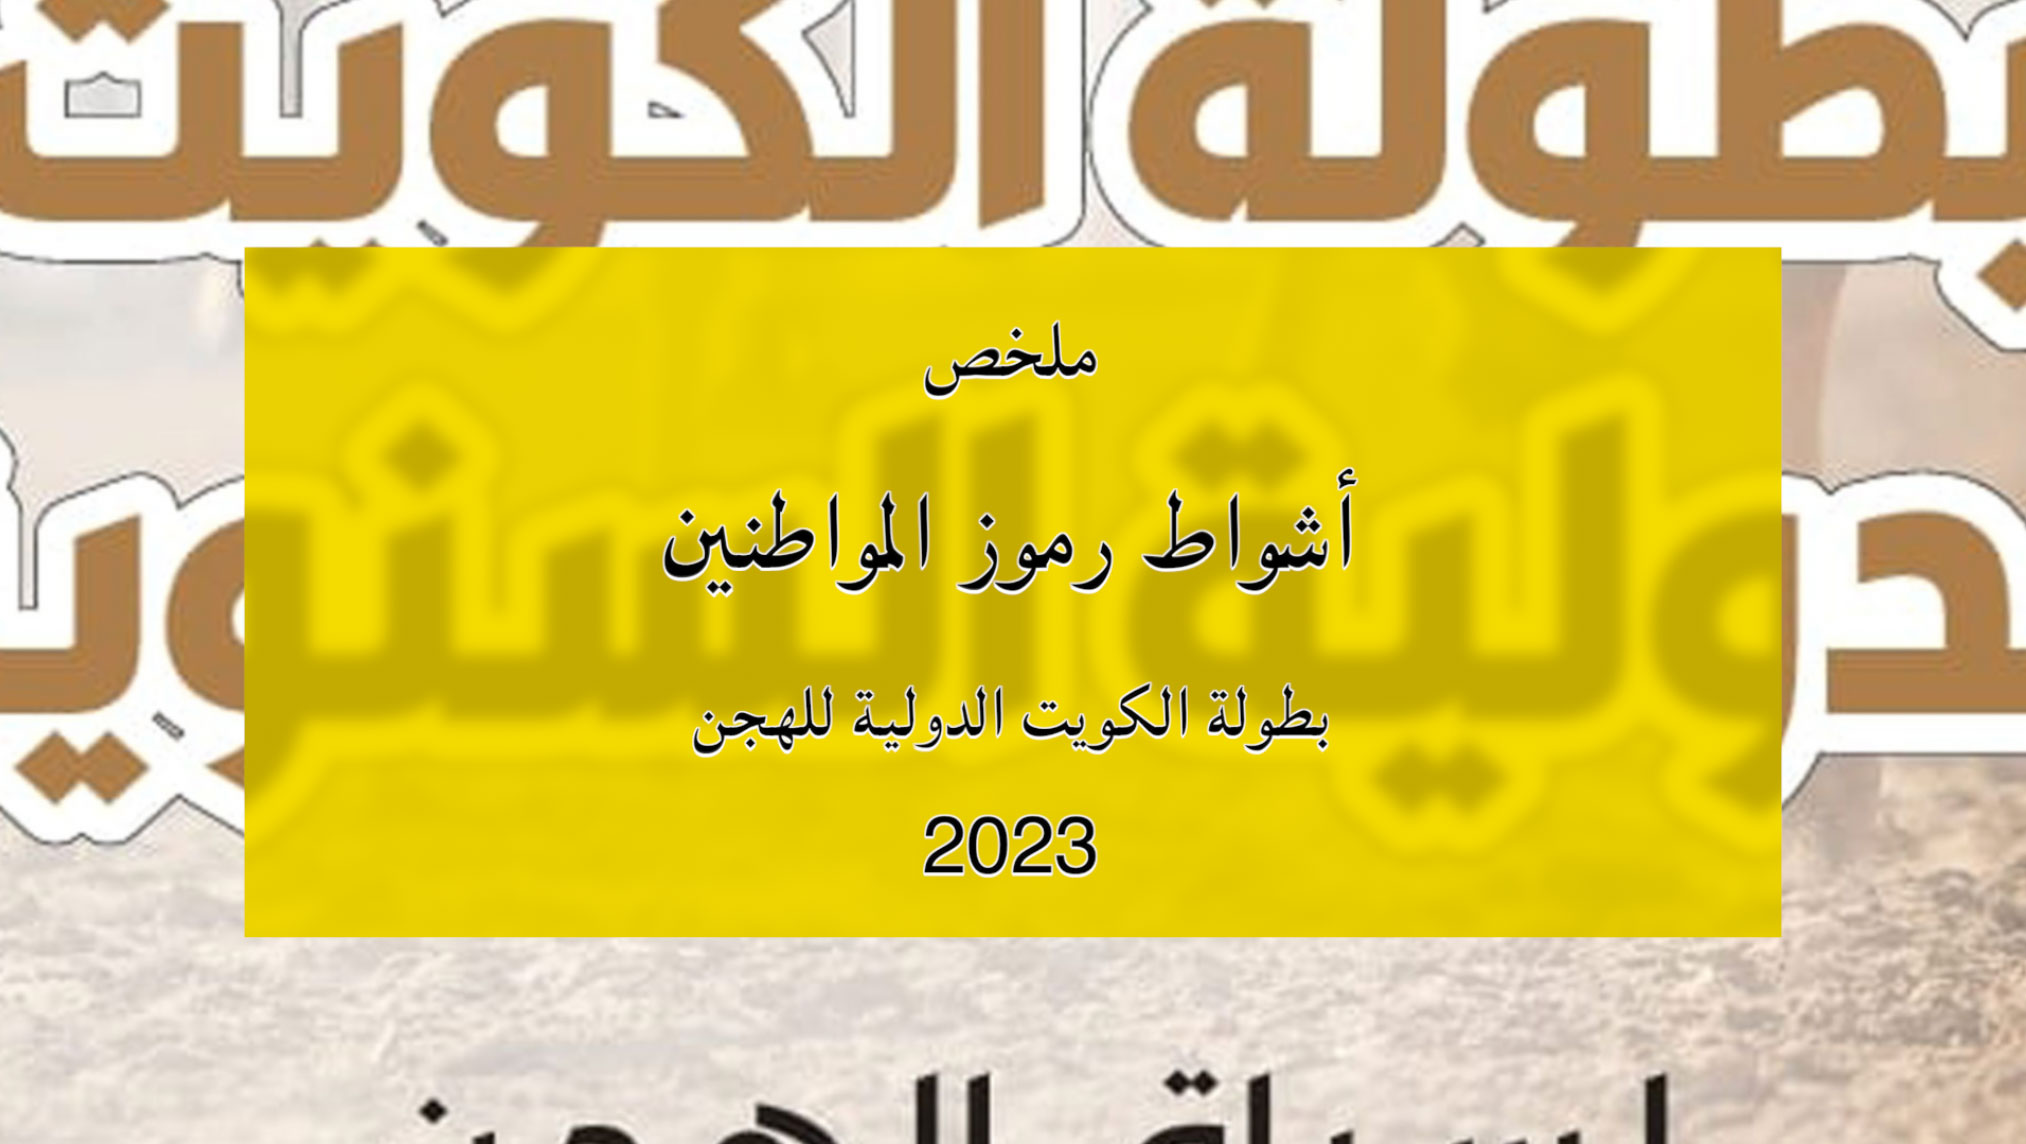 ملخص أشواط الرموز للمواطنين ببطولة الكويت الدولية للهجن 2023